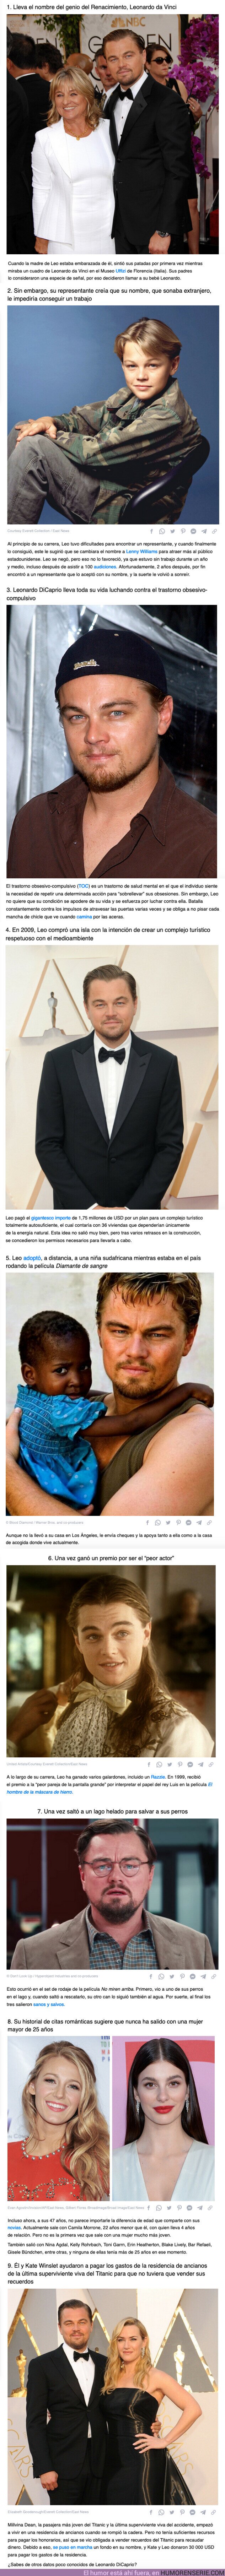 105218 - GALERÍA: 9 Datos curiosos sobre Leonardo DiCaprio que no conocíamos